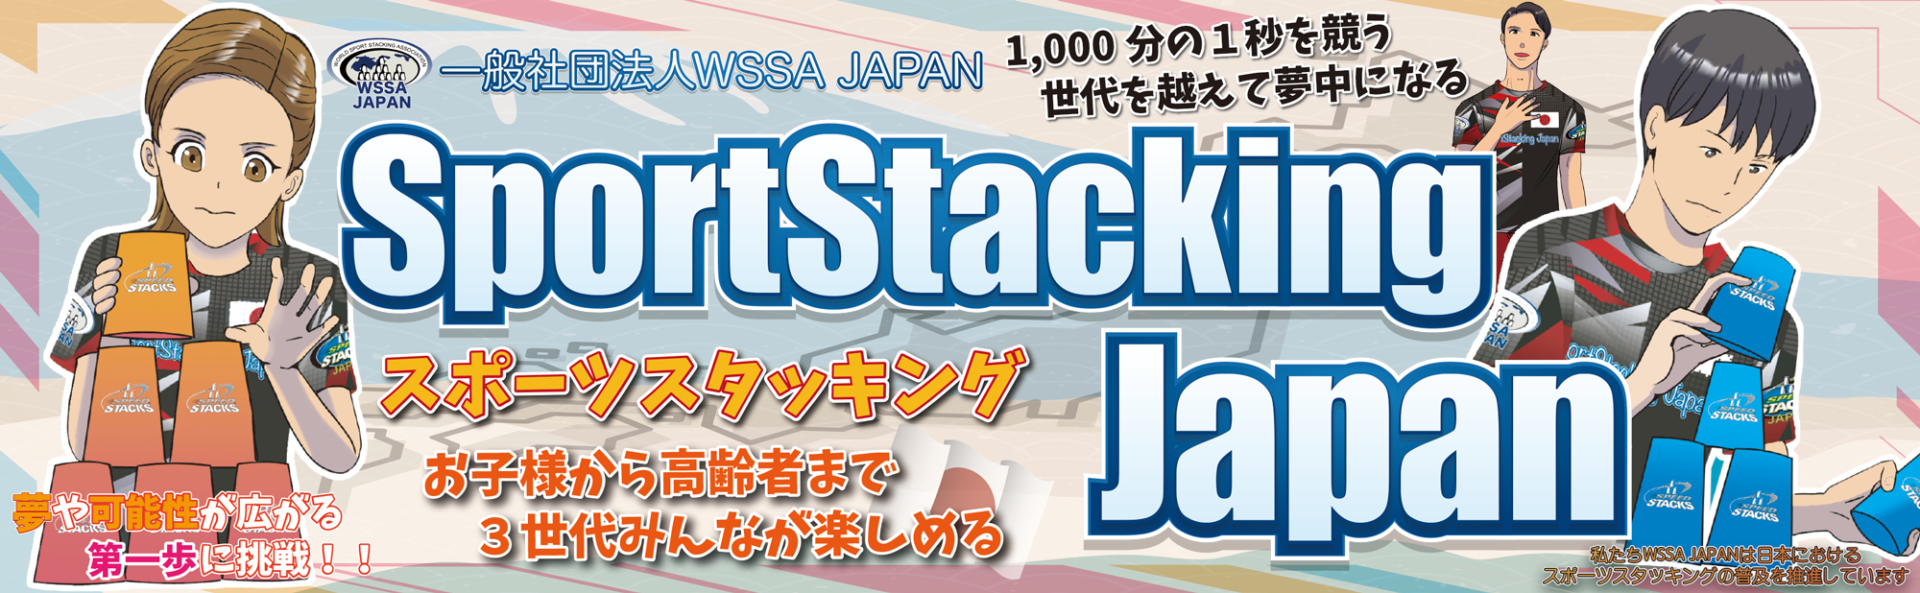 私たちWSSA-JAPANは日本における スポーツスタッキングの普及を推進しています